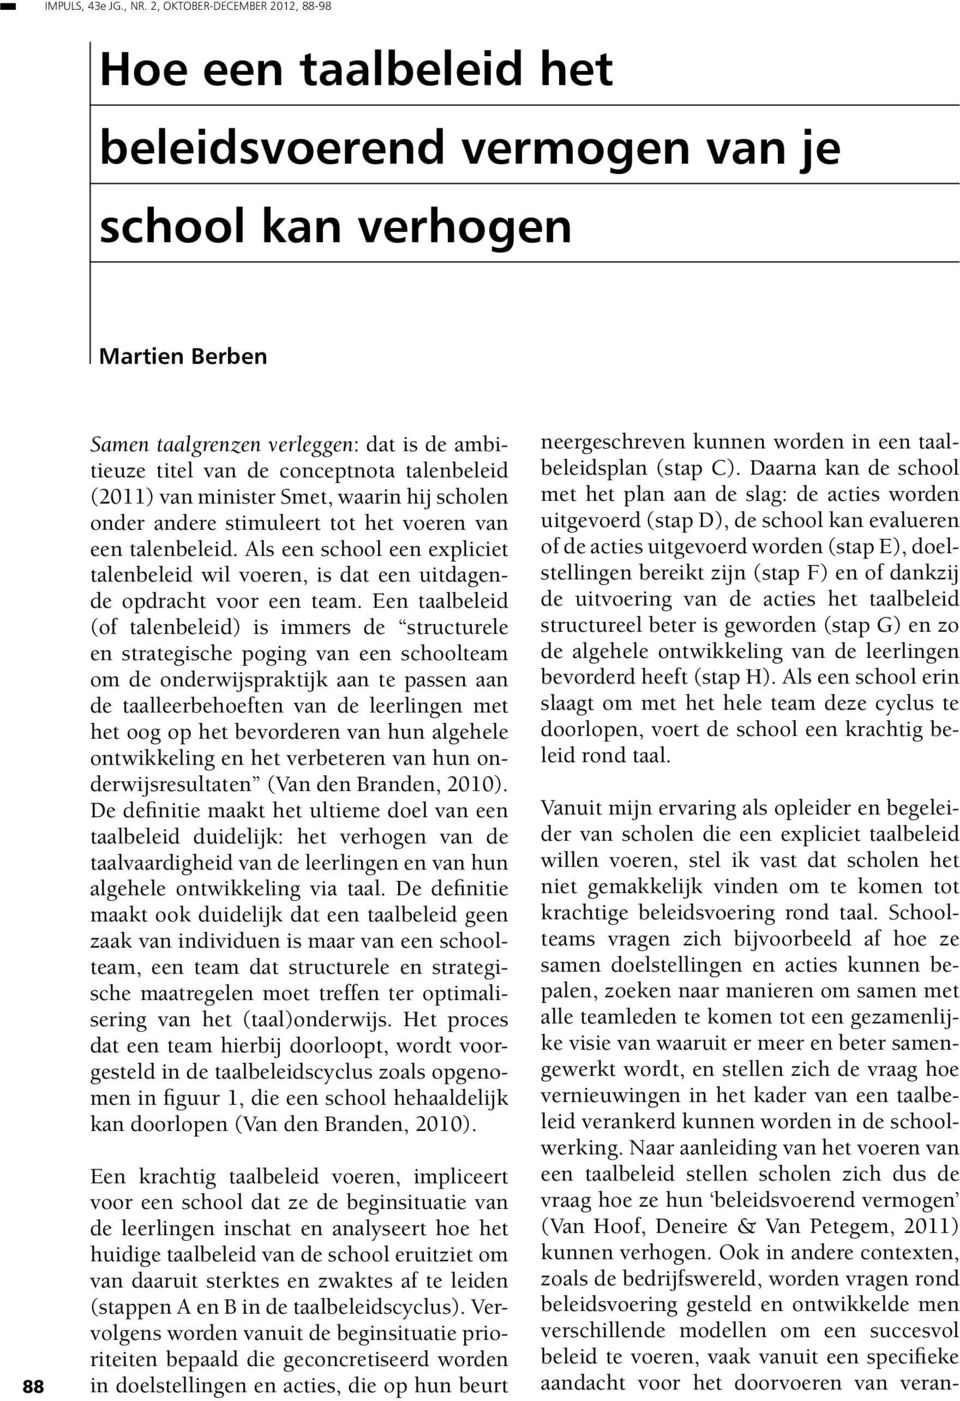 talenbeleid (2011) van minister Smet, waarin hij scholen onder andere stimuleert tot het voeren van een talenbeleid.